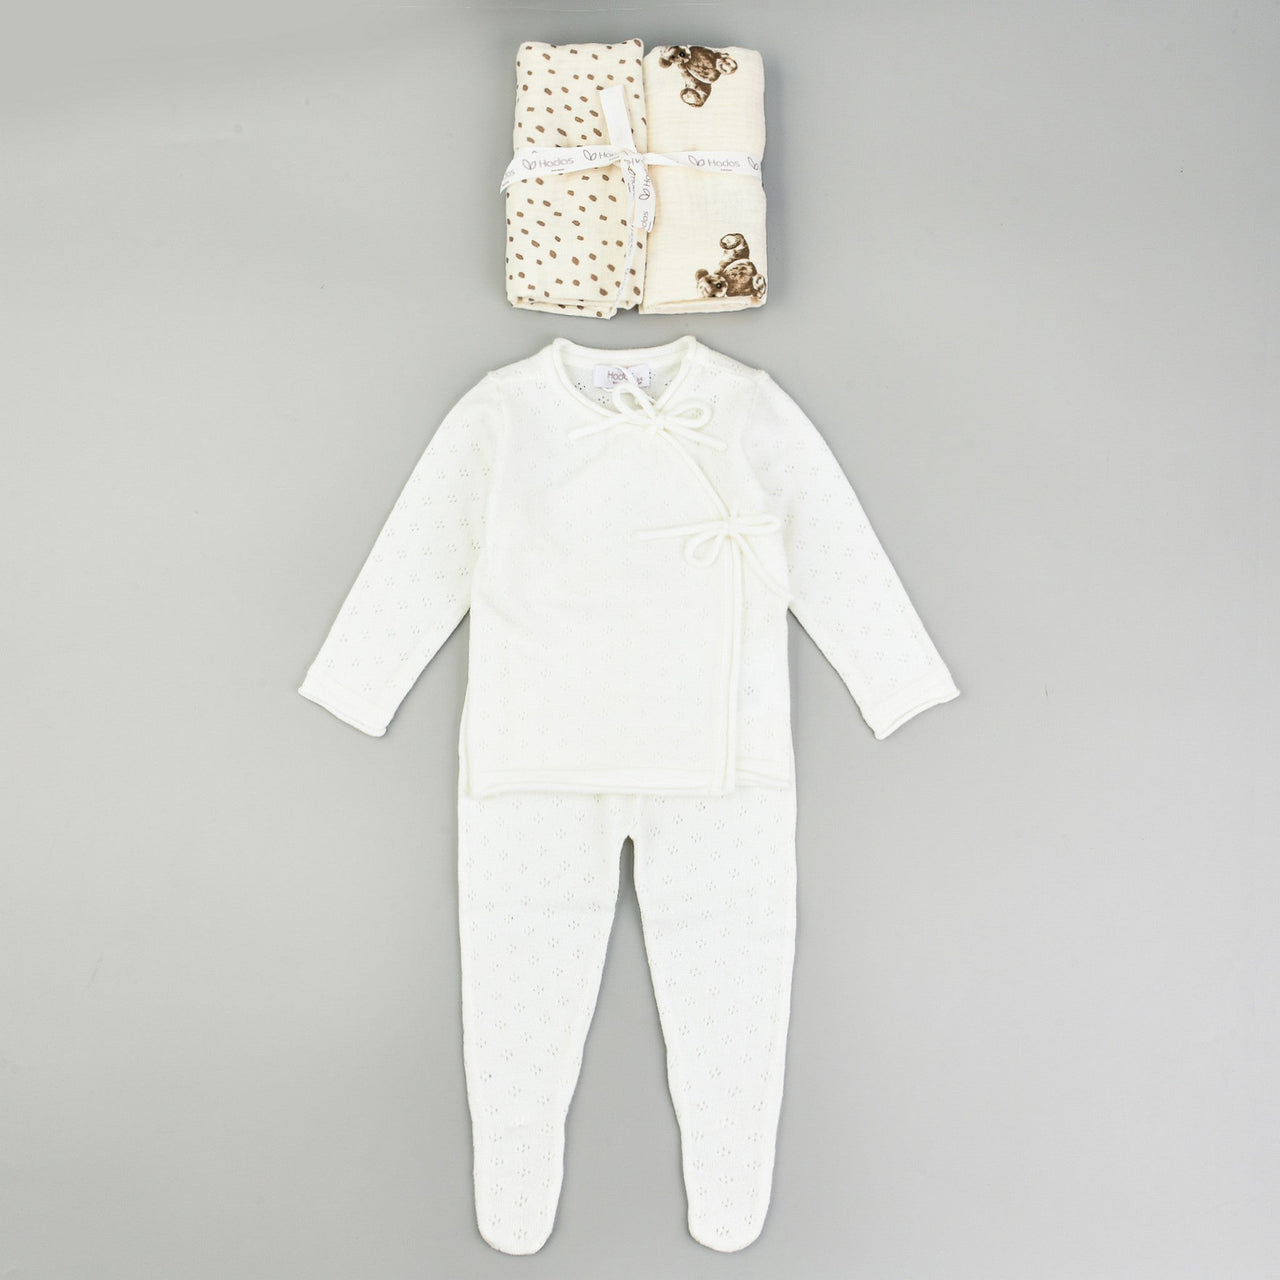 Hadas Knitted Baby Gift Set - Kidichic